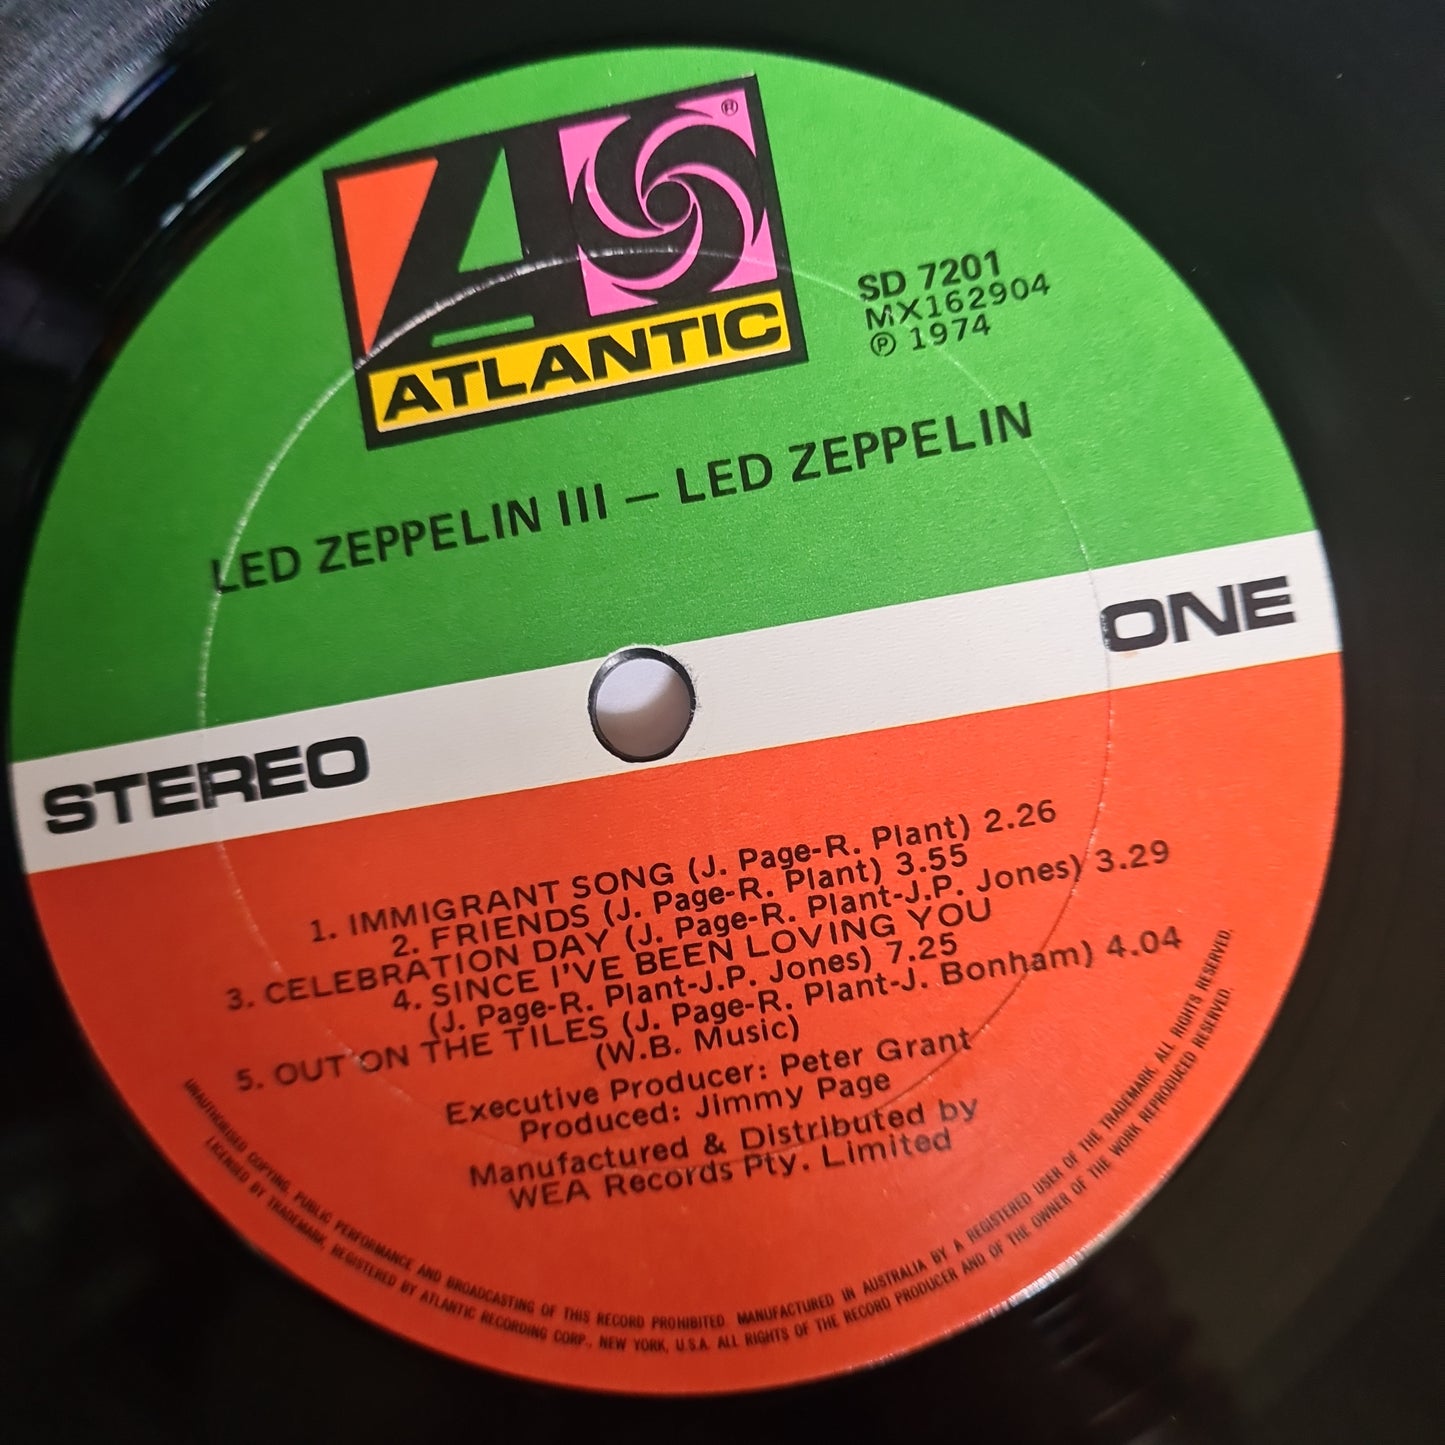 Led Zeppelin – Led Zeppelin 3 - 1970 (Spinning Wheel Cover)